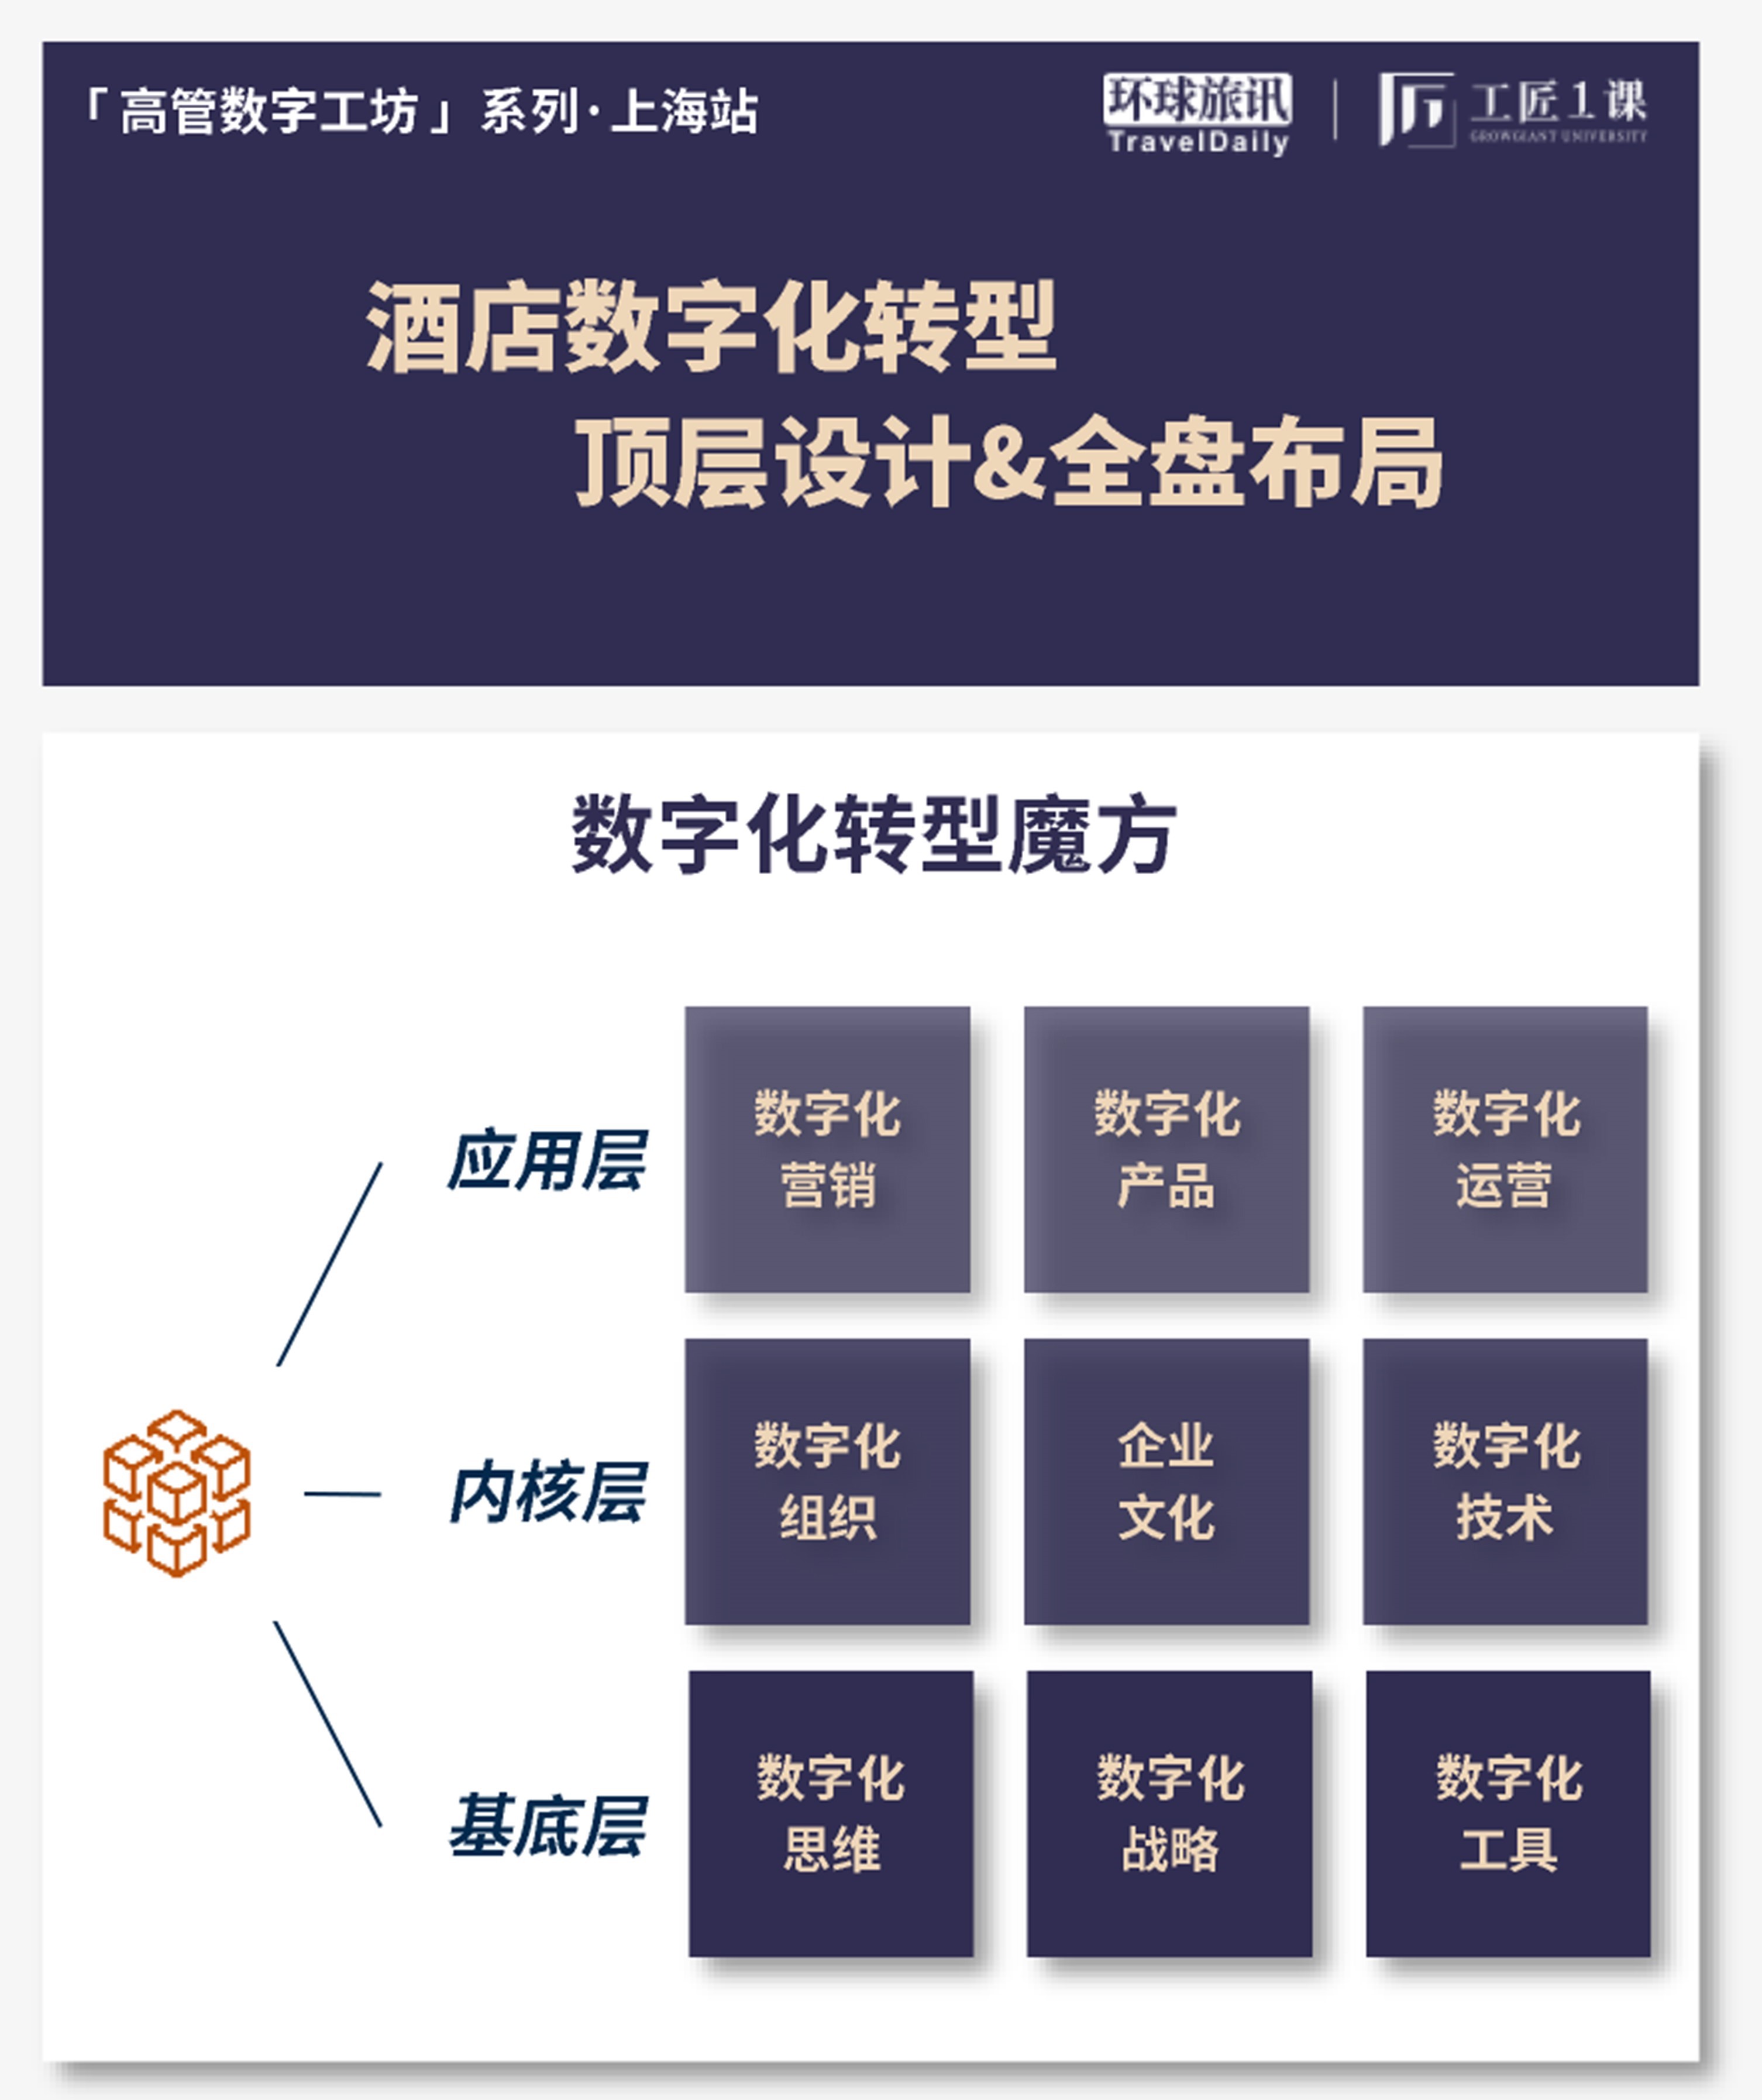 「高管数字工坊·上海站」酒店数字化转型顶层设计&全盘布局